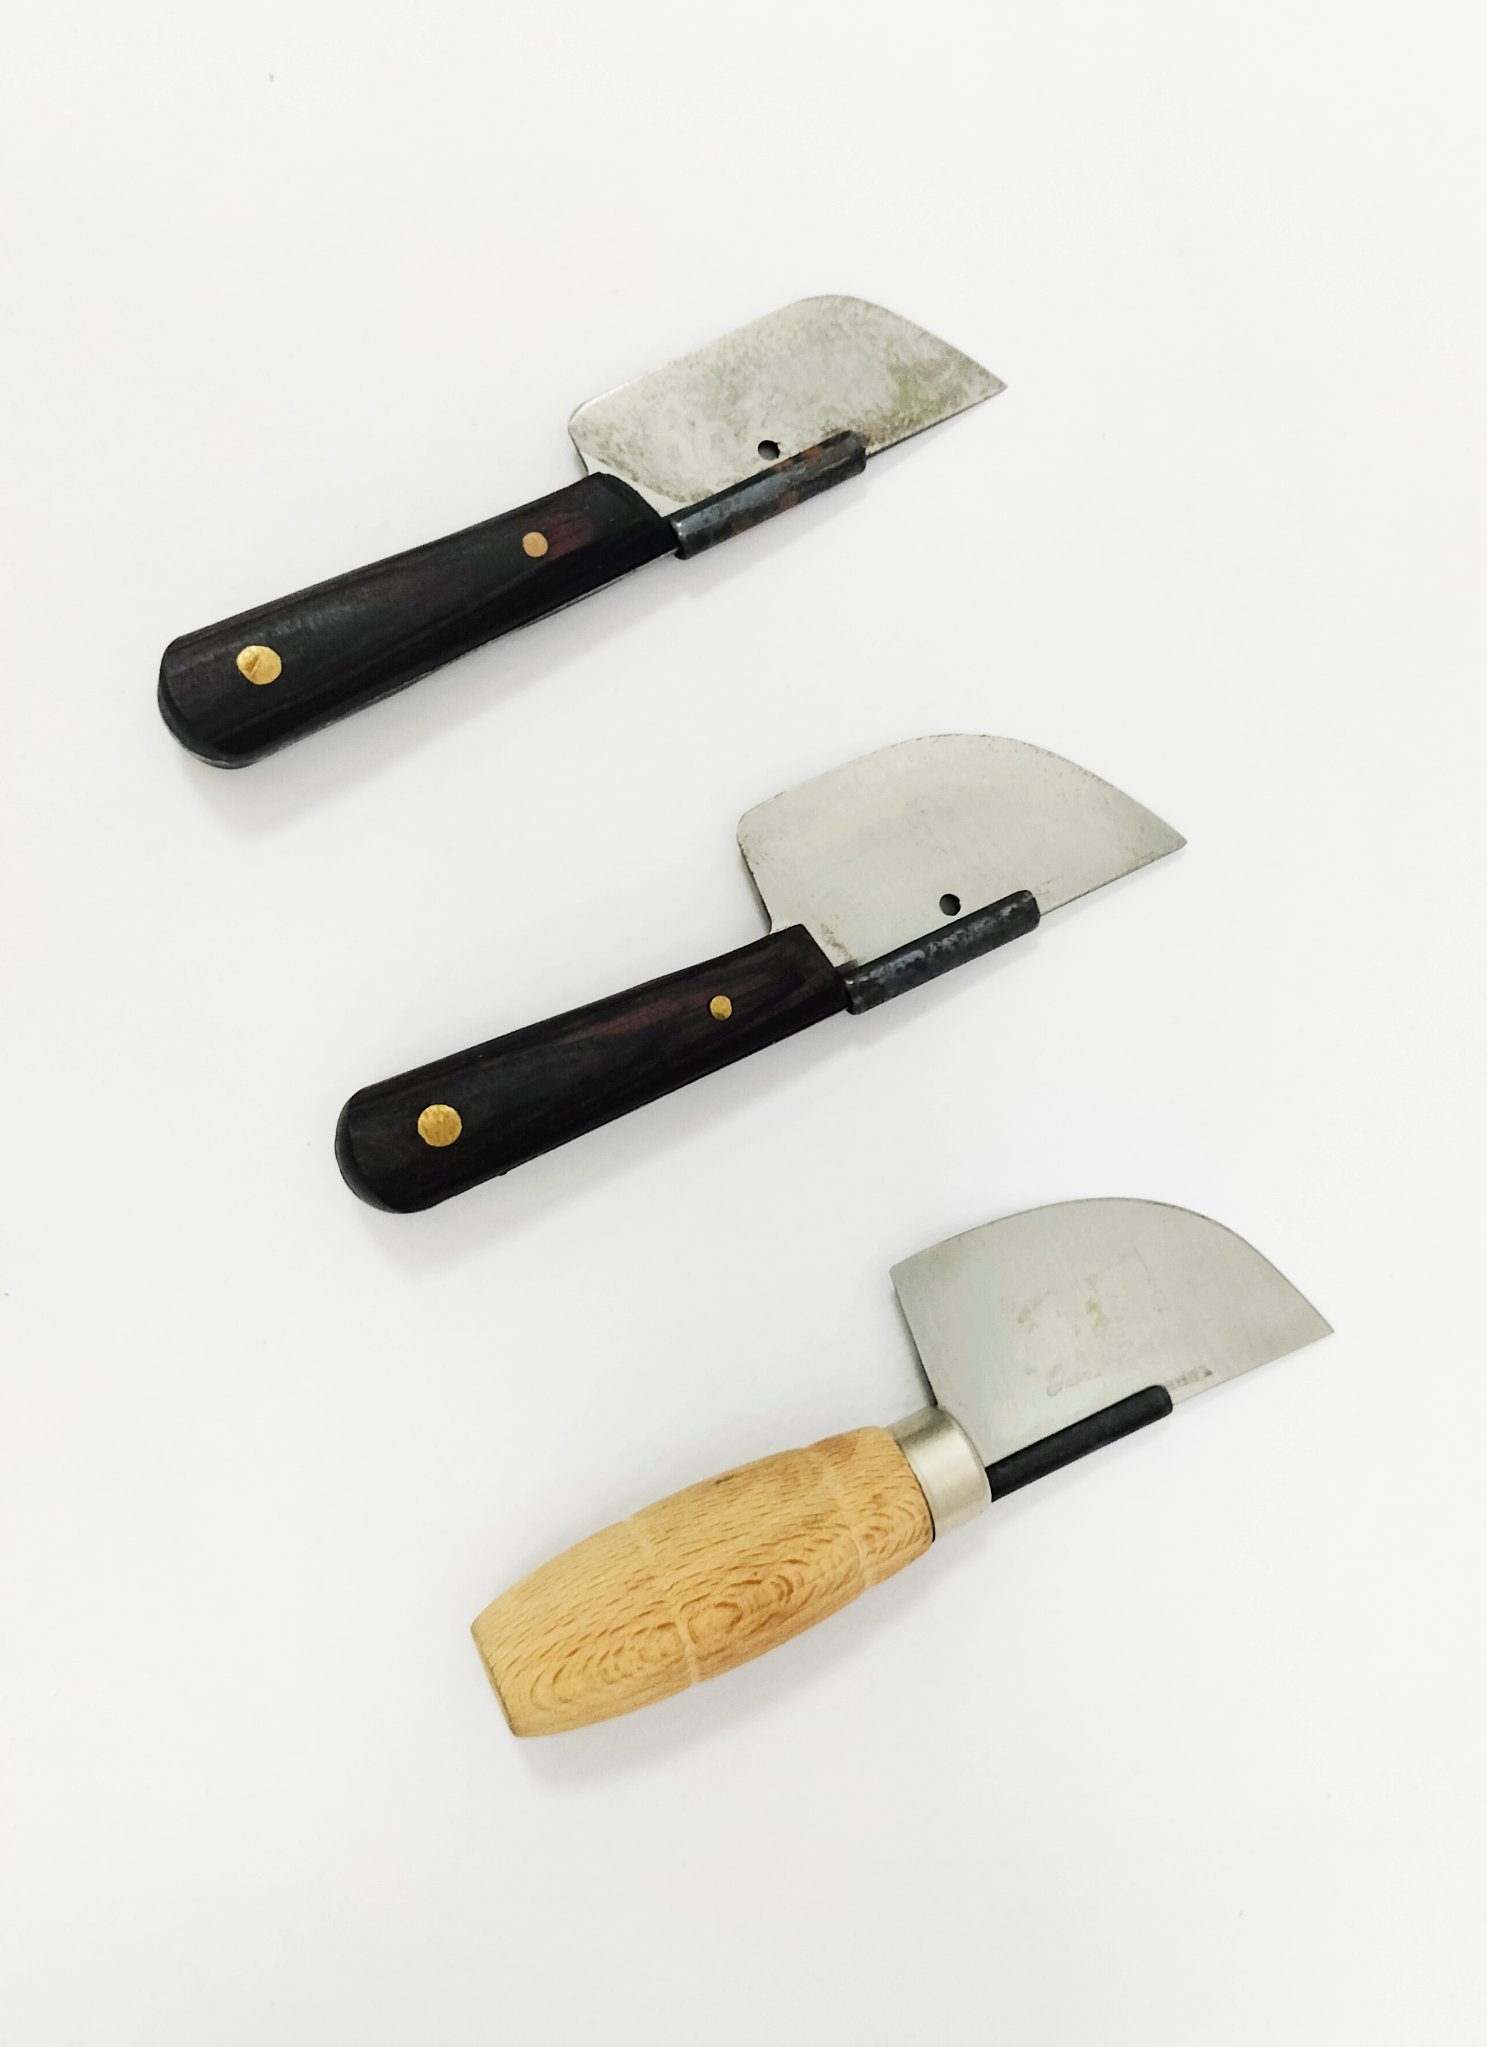 Pequeños cuchillos con el que realizar un pequeño corte en la corteza del frutal para incorporar el injerto.